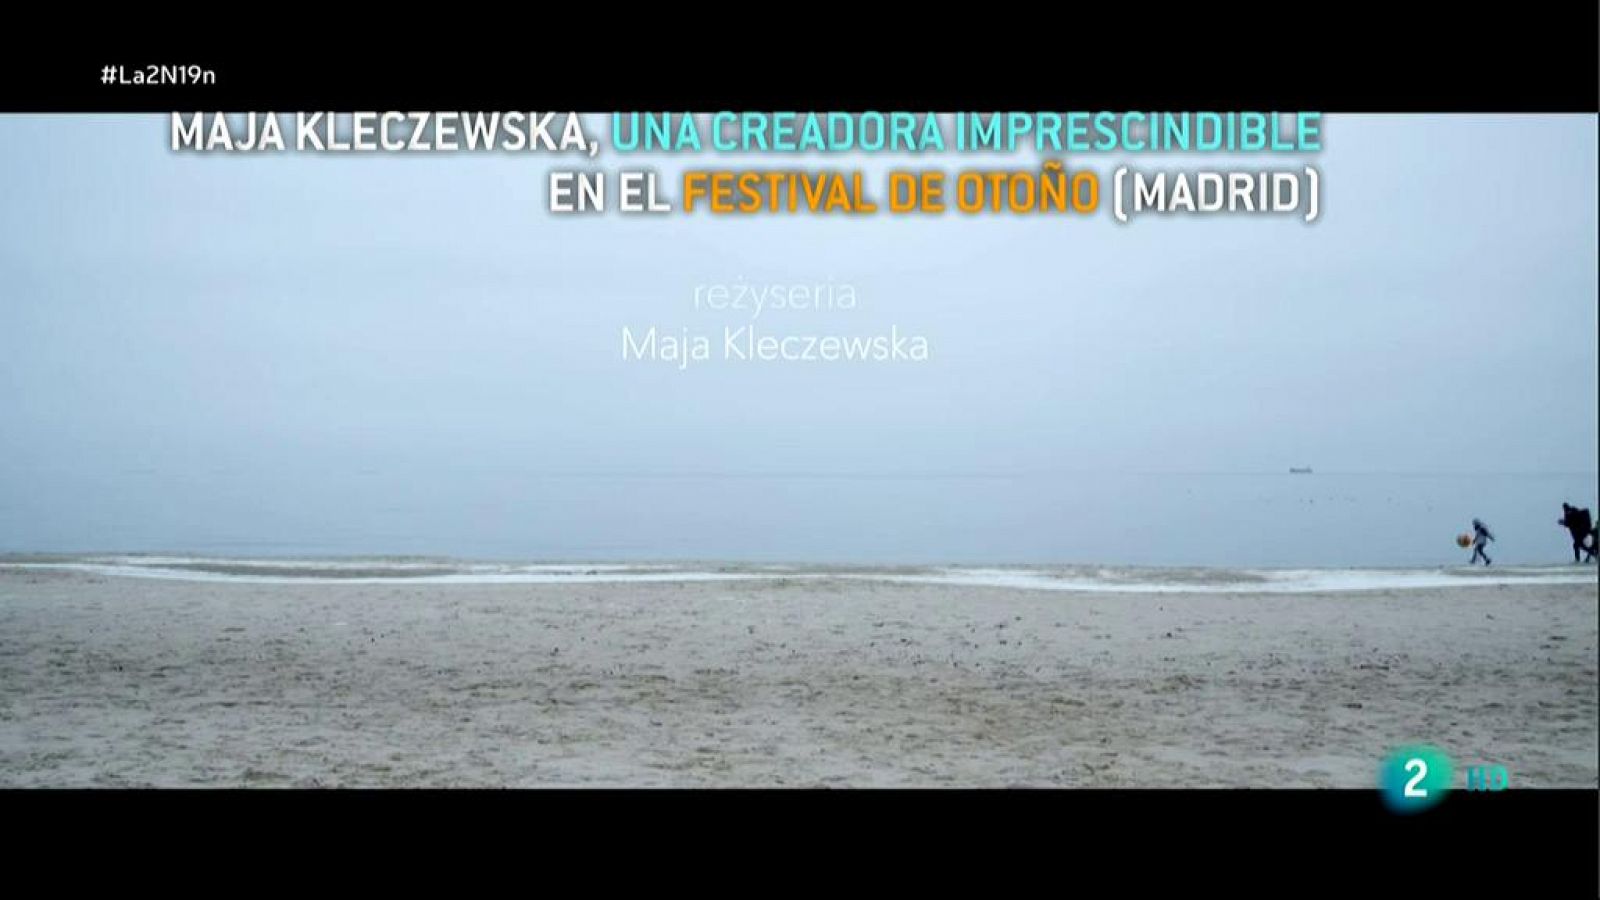 Maja Kleczewska, una creadora contemporánea imprescindible en el festival de Otoño